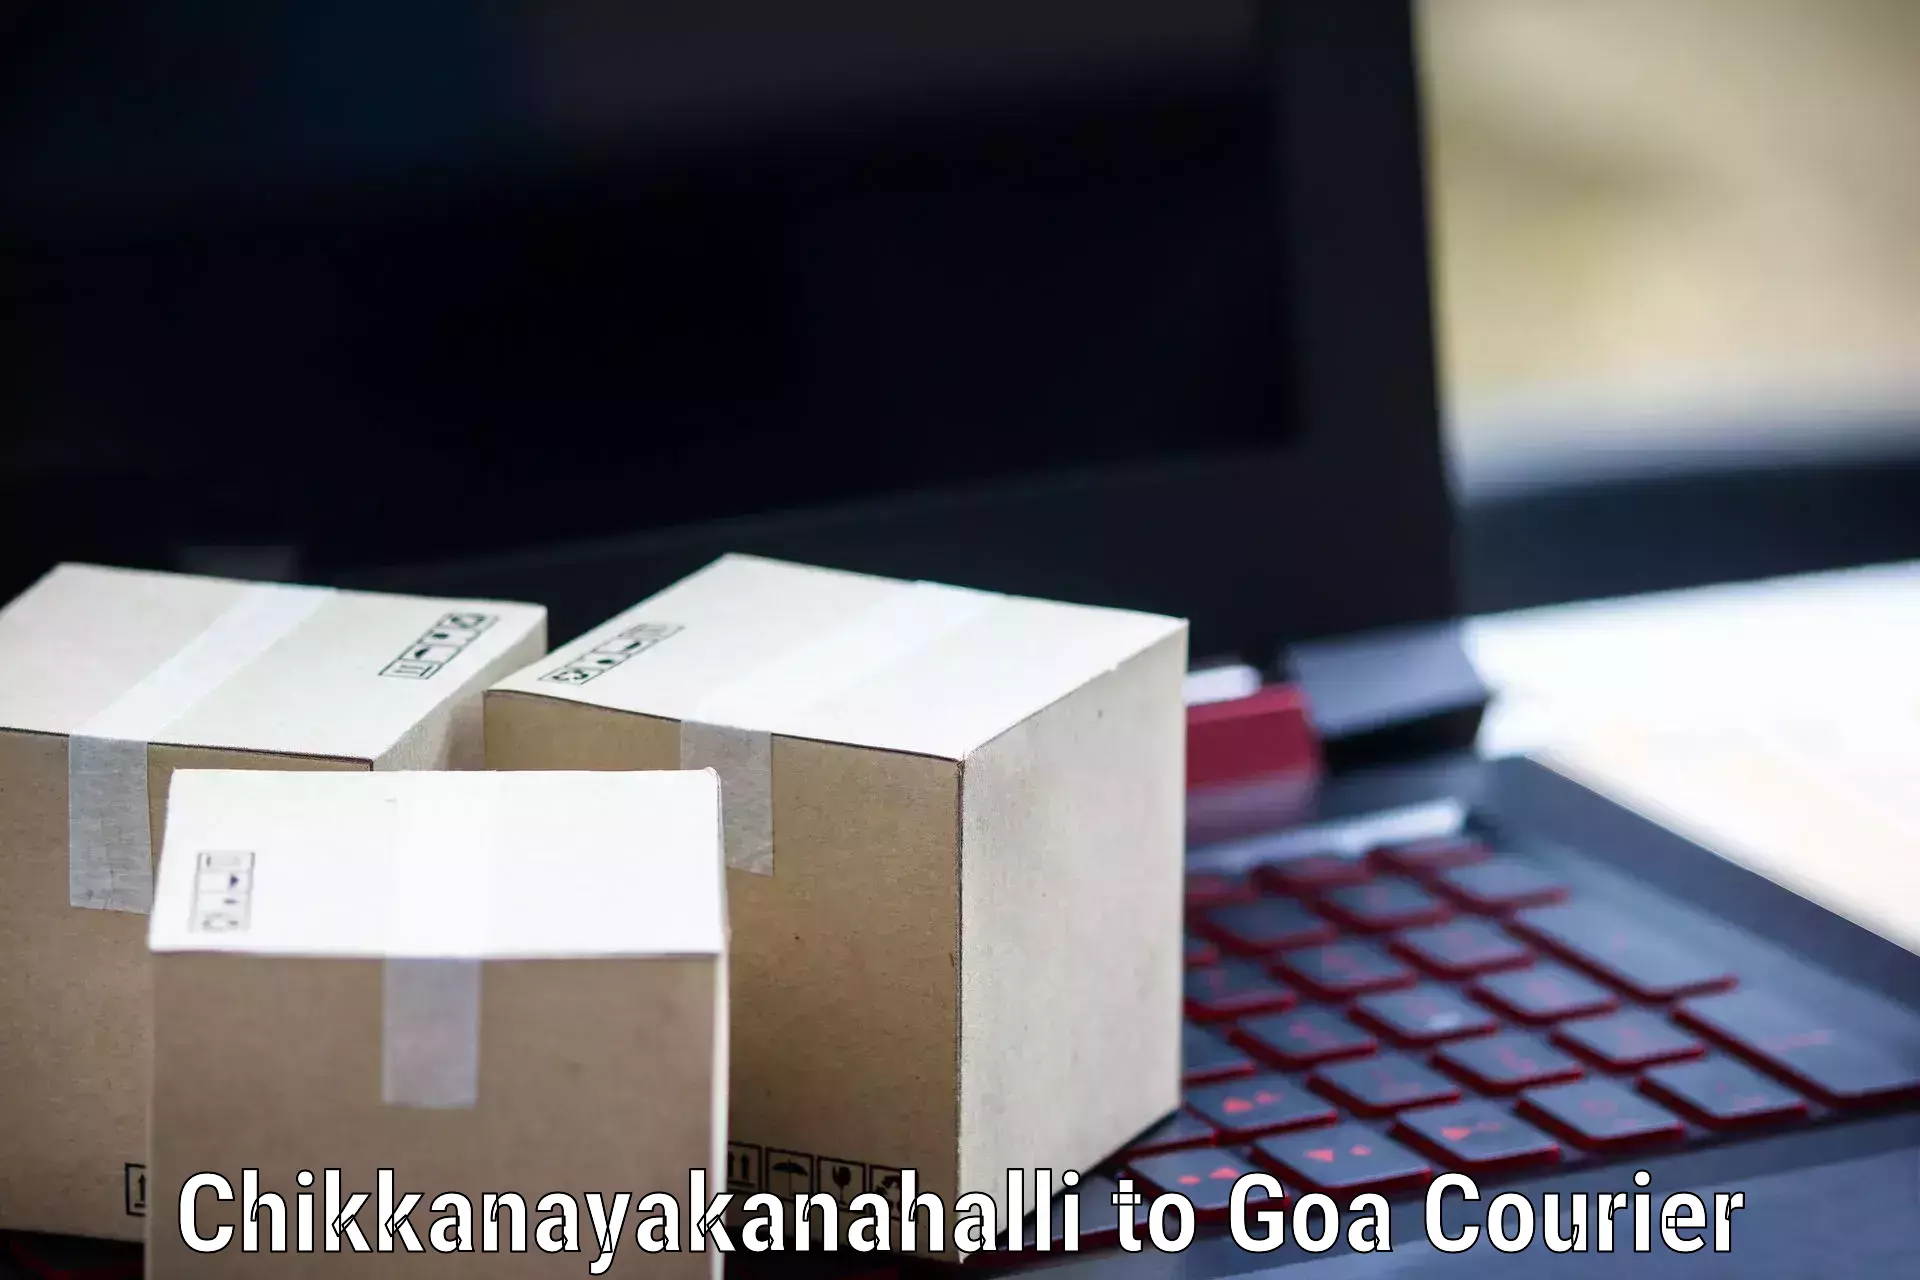 Online shipping calculator Chikkanayakanahalli to Bicholim